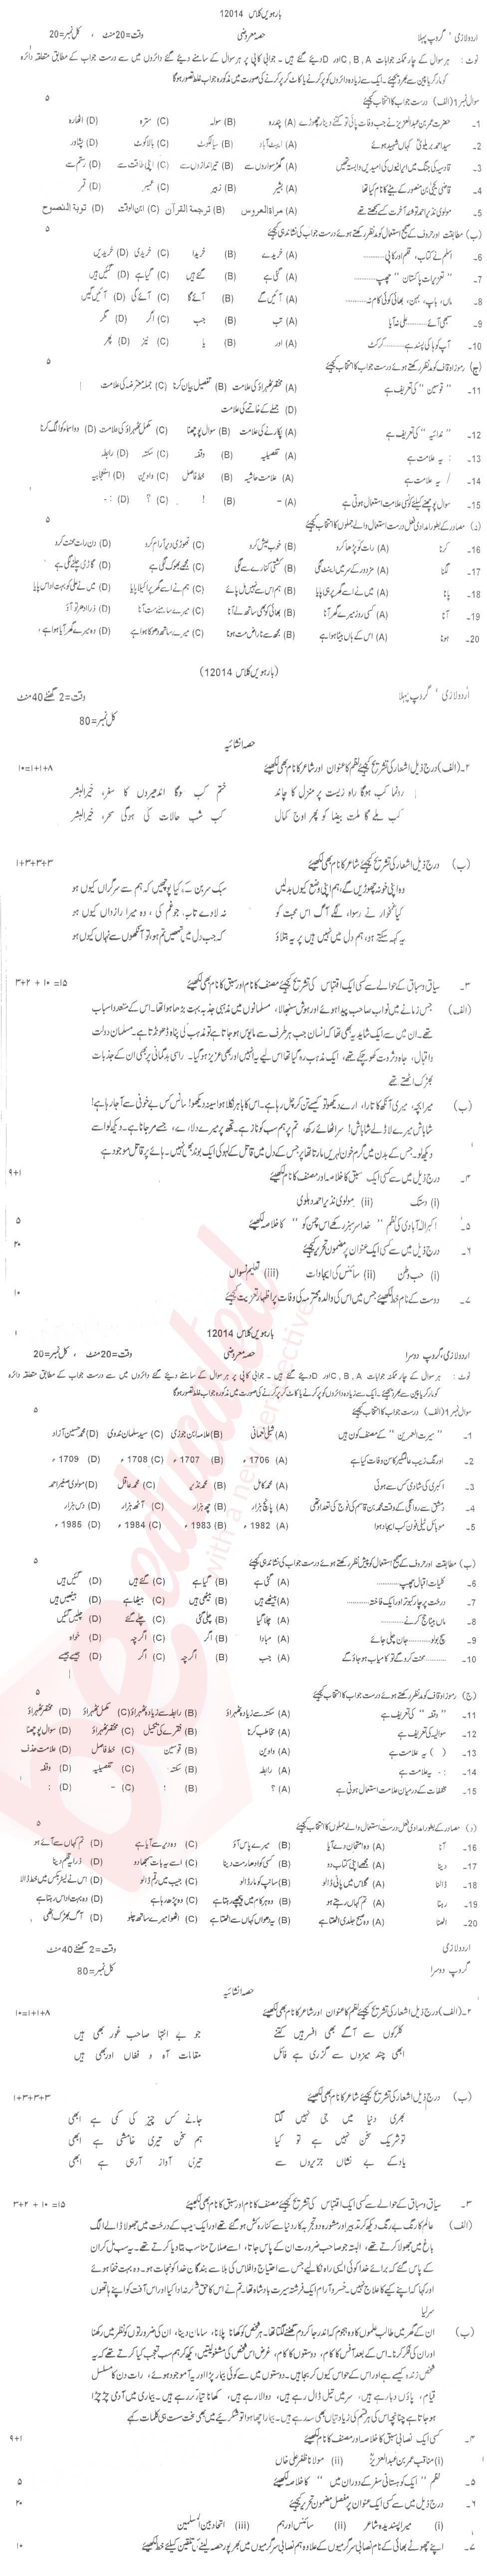 Urdu 12th class Past Paper Group 1 BISE DG Khan 2014